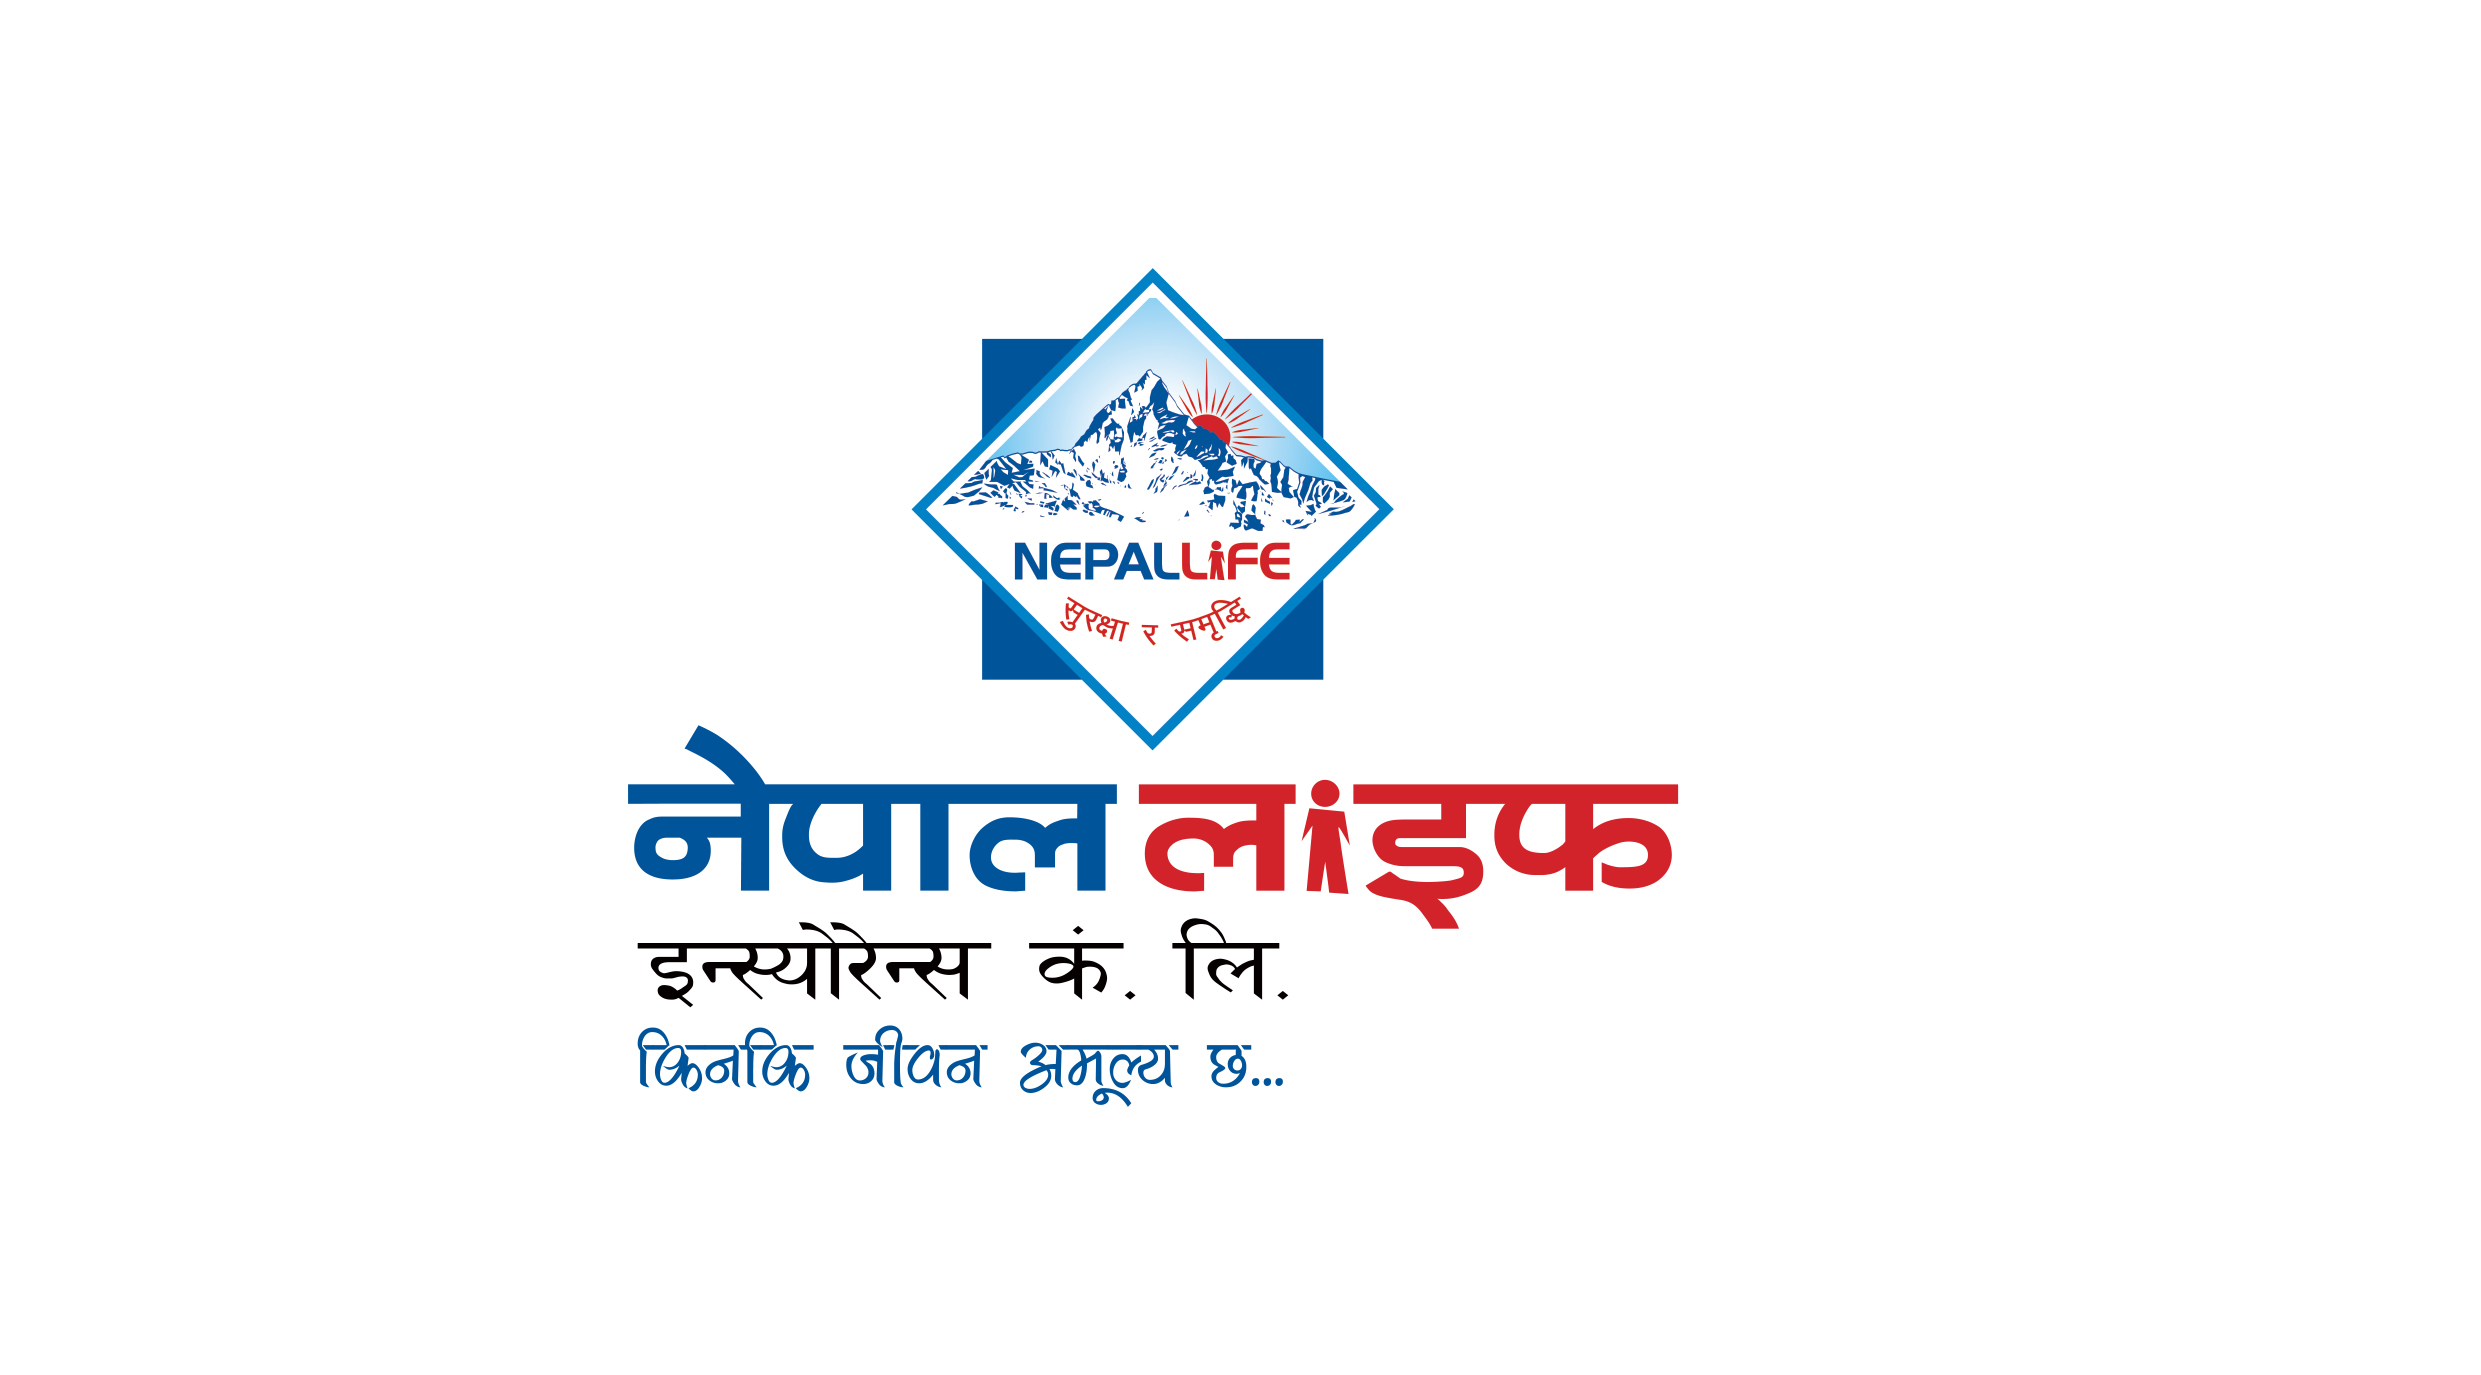 अब कनेक्ट आईपिएसमार्फत नेपाल लाइफको बीमा शुल्क भुक्तानी गर्न सकिने